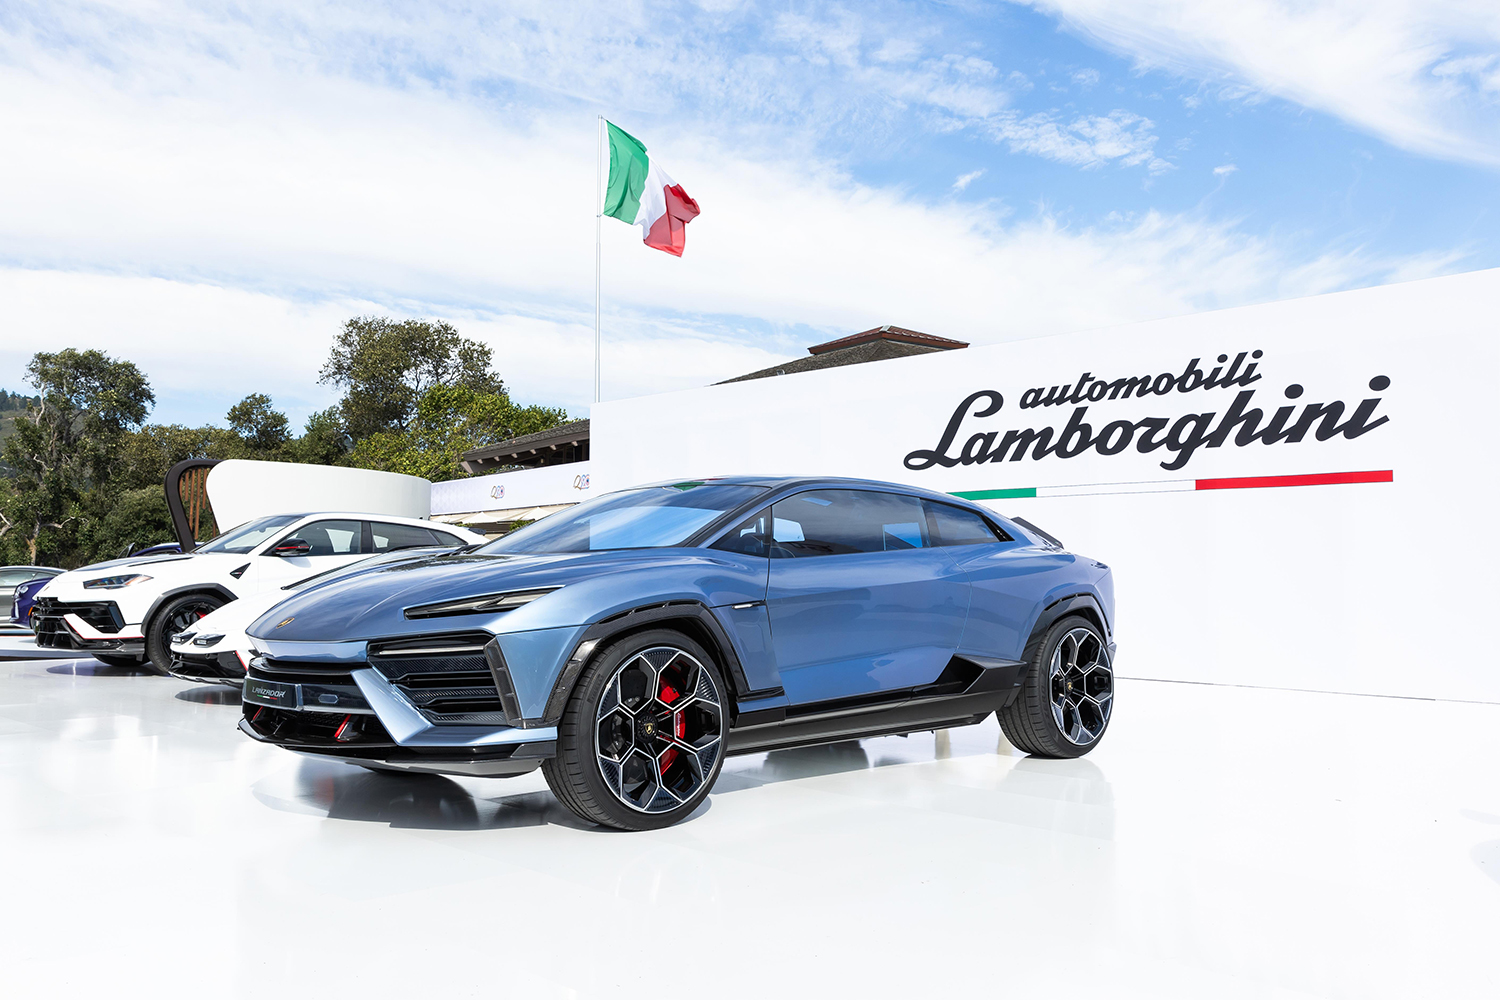 The Lamborghini Lanzador